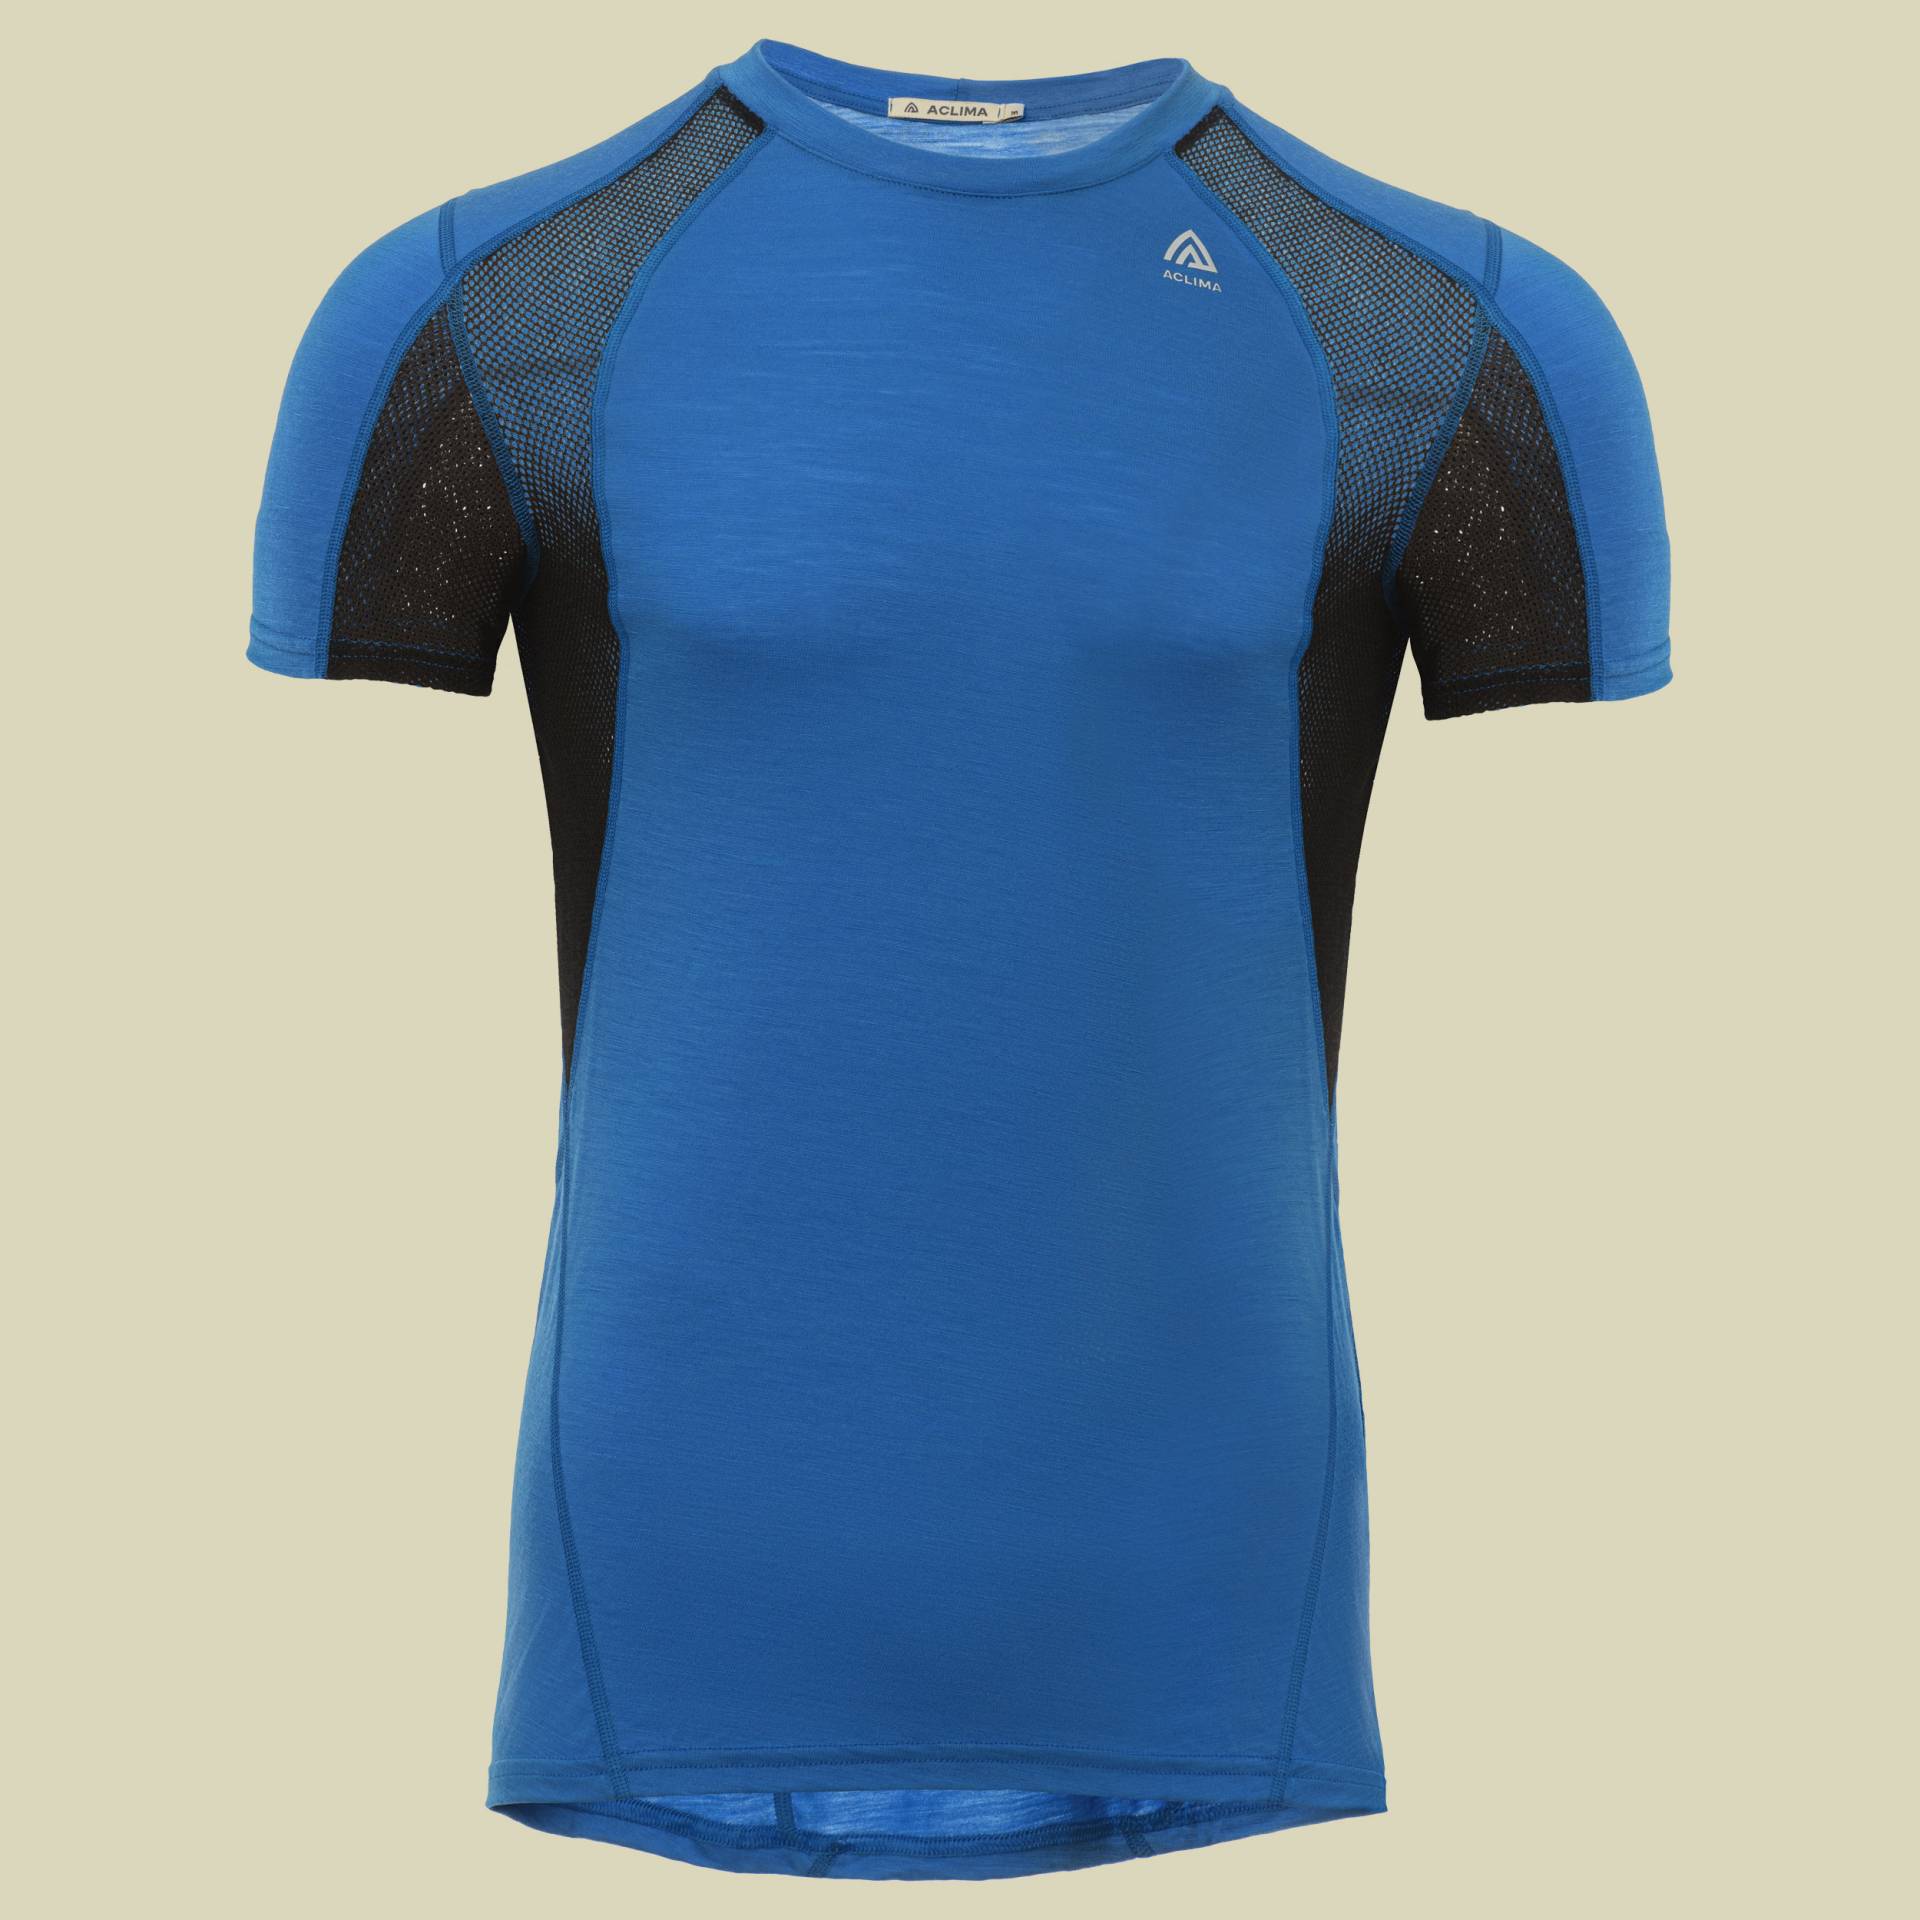 LightWool Sports T-Shirt Men Größe S Farbe daphne/jet black von aclima